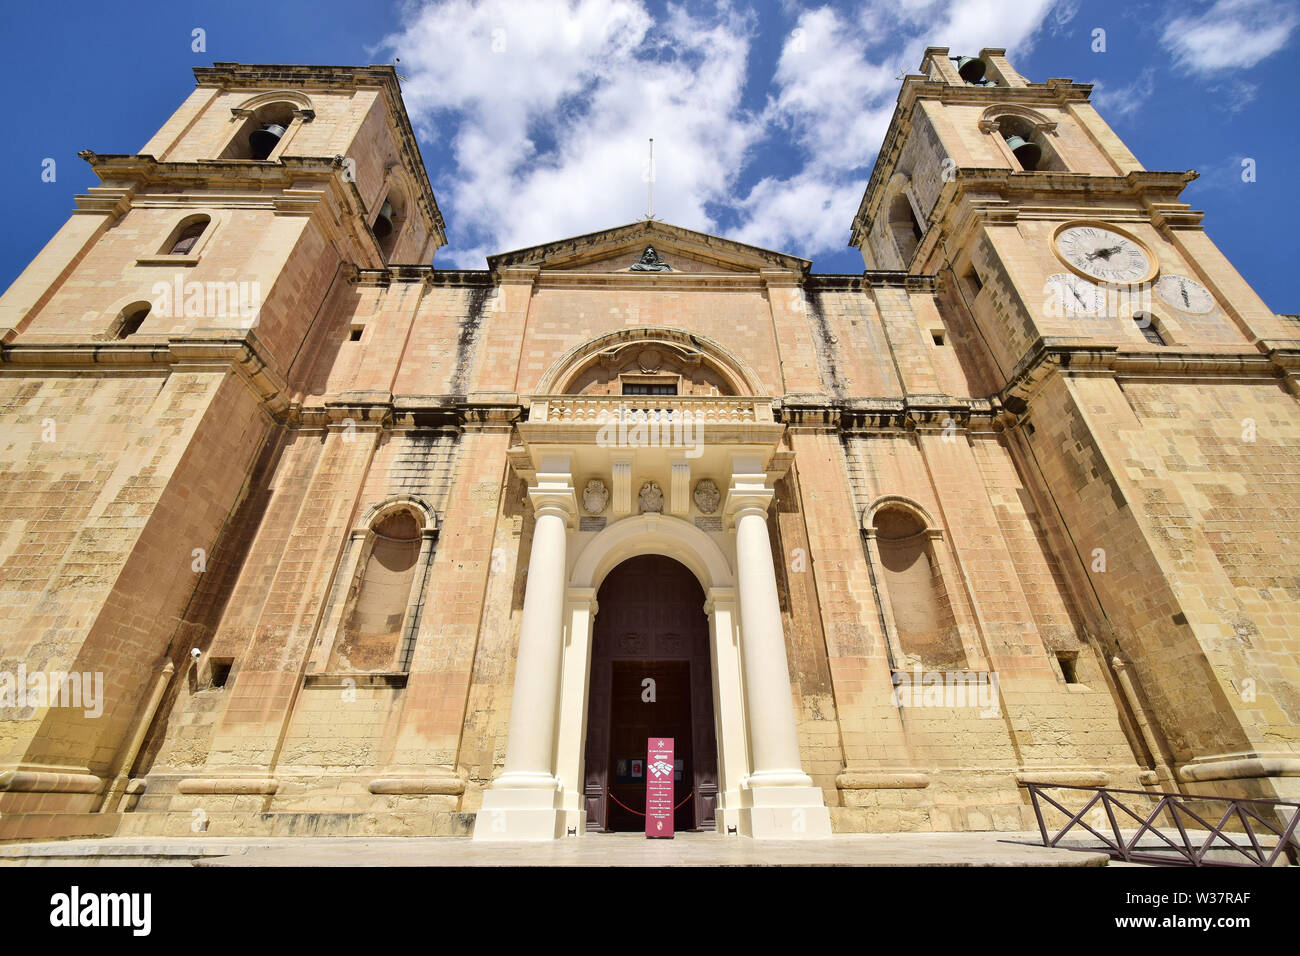 St. John's Co-Cathedral, Valletta, Malta, Europe Stock Photo